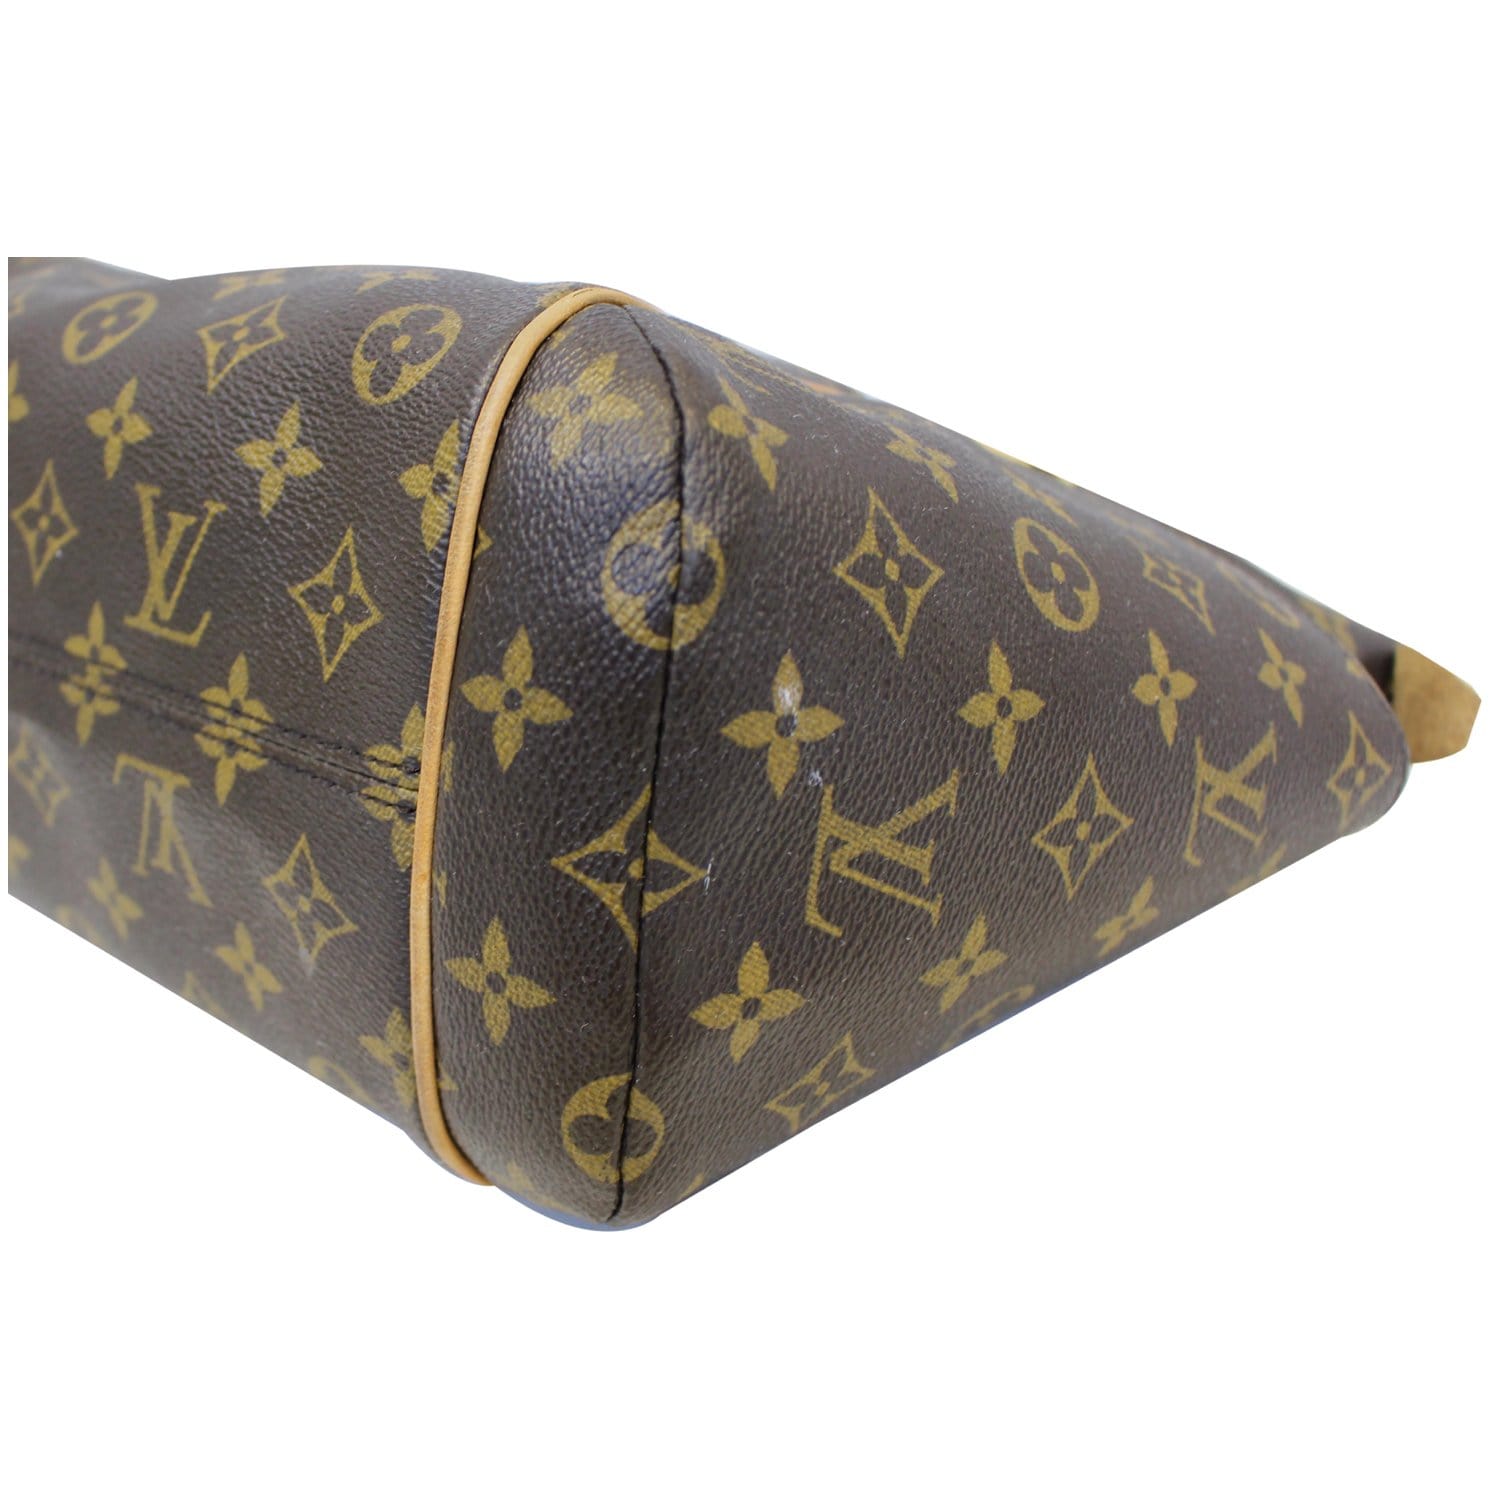 Brown Louis Vuitton Monogram Totally PM Tote Bag – Designer Revival